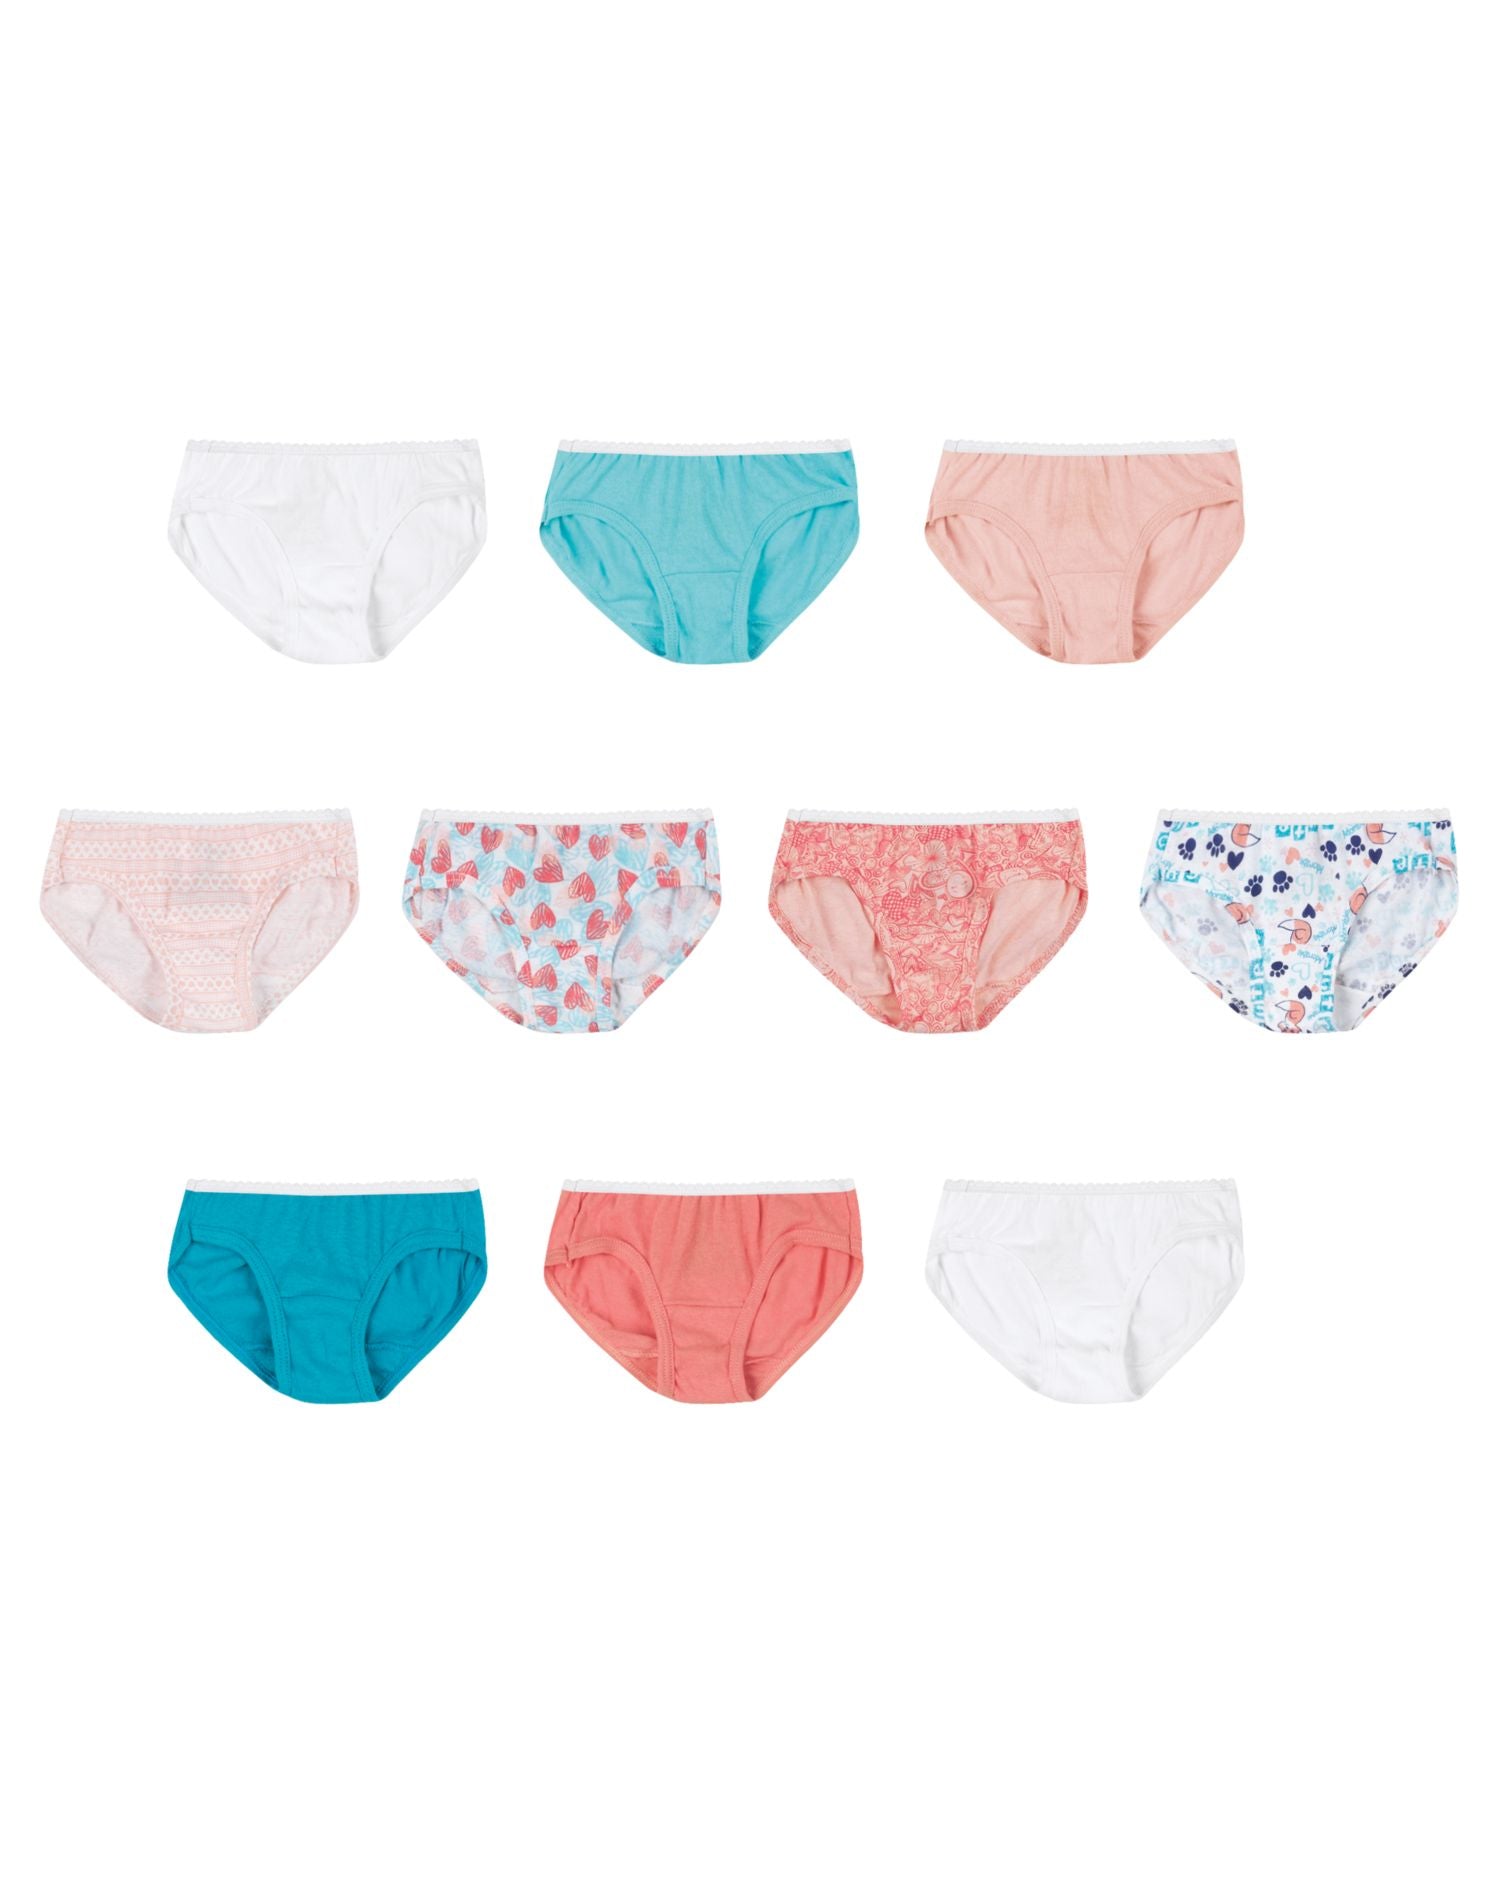 Girls Underwear Briefs 10 Pack 100% Cotton Hanes Preshrunk No Ride